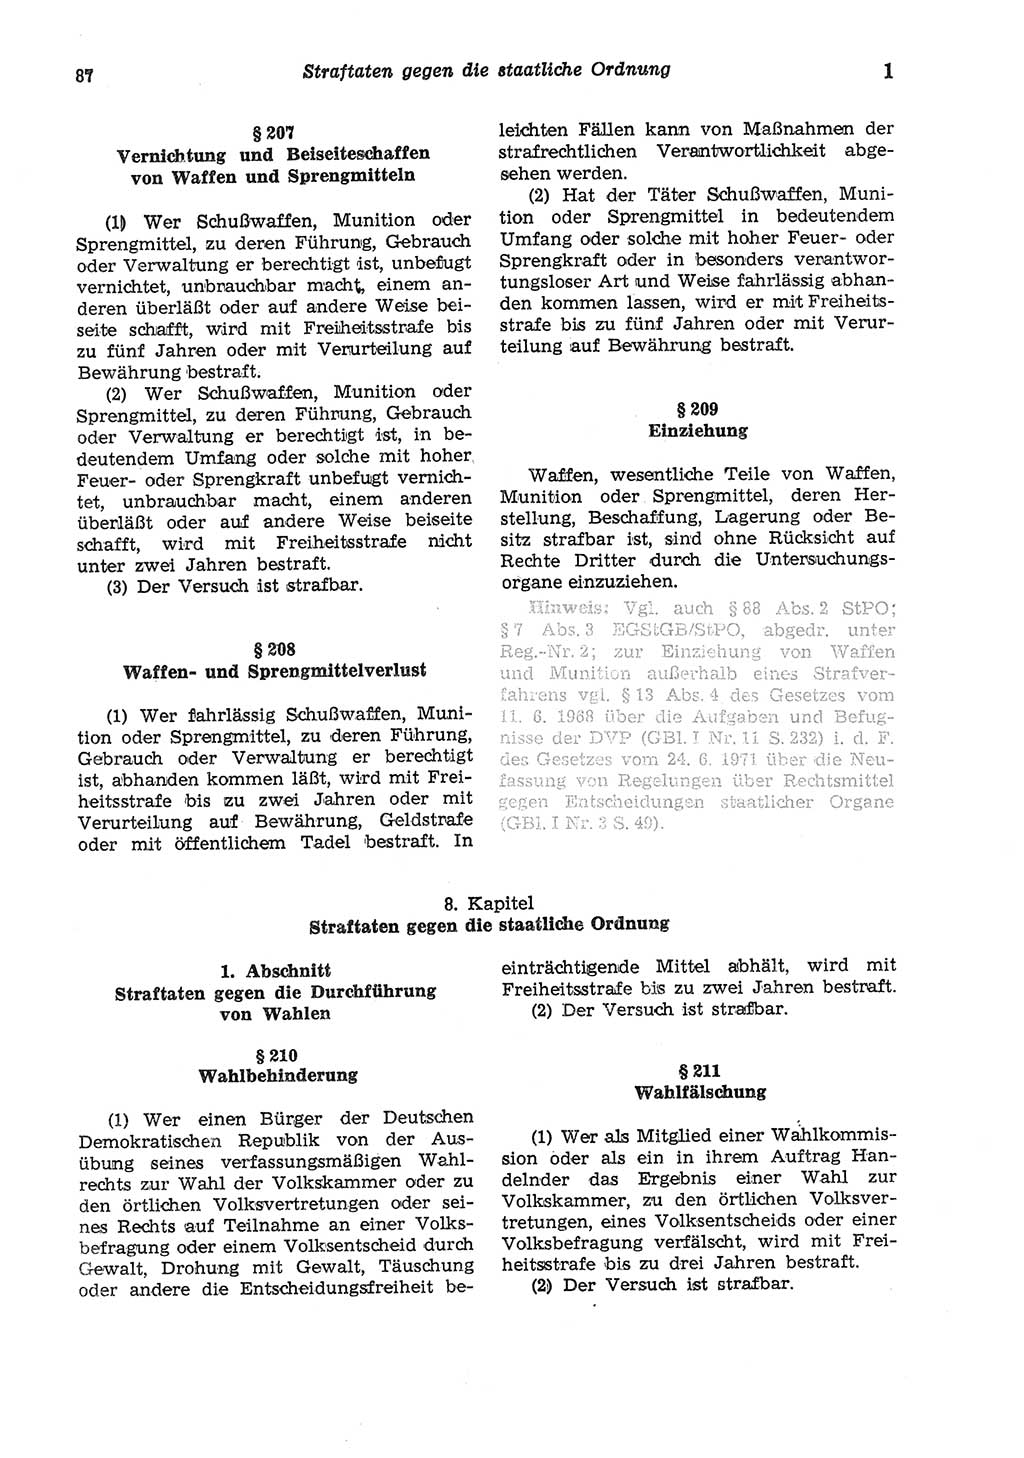 Strafgesetzbuch (StGB) der Deutschen Demokratischen Republik (DDR) und angrenzende Gesetze und Bestimmungen 1975, Seite 87 (StGB DDR Ges. Best. 1975, S. 87)